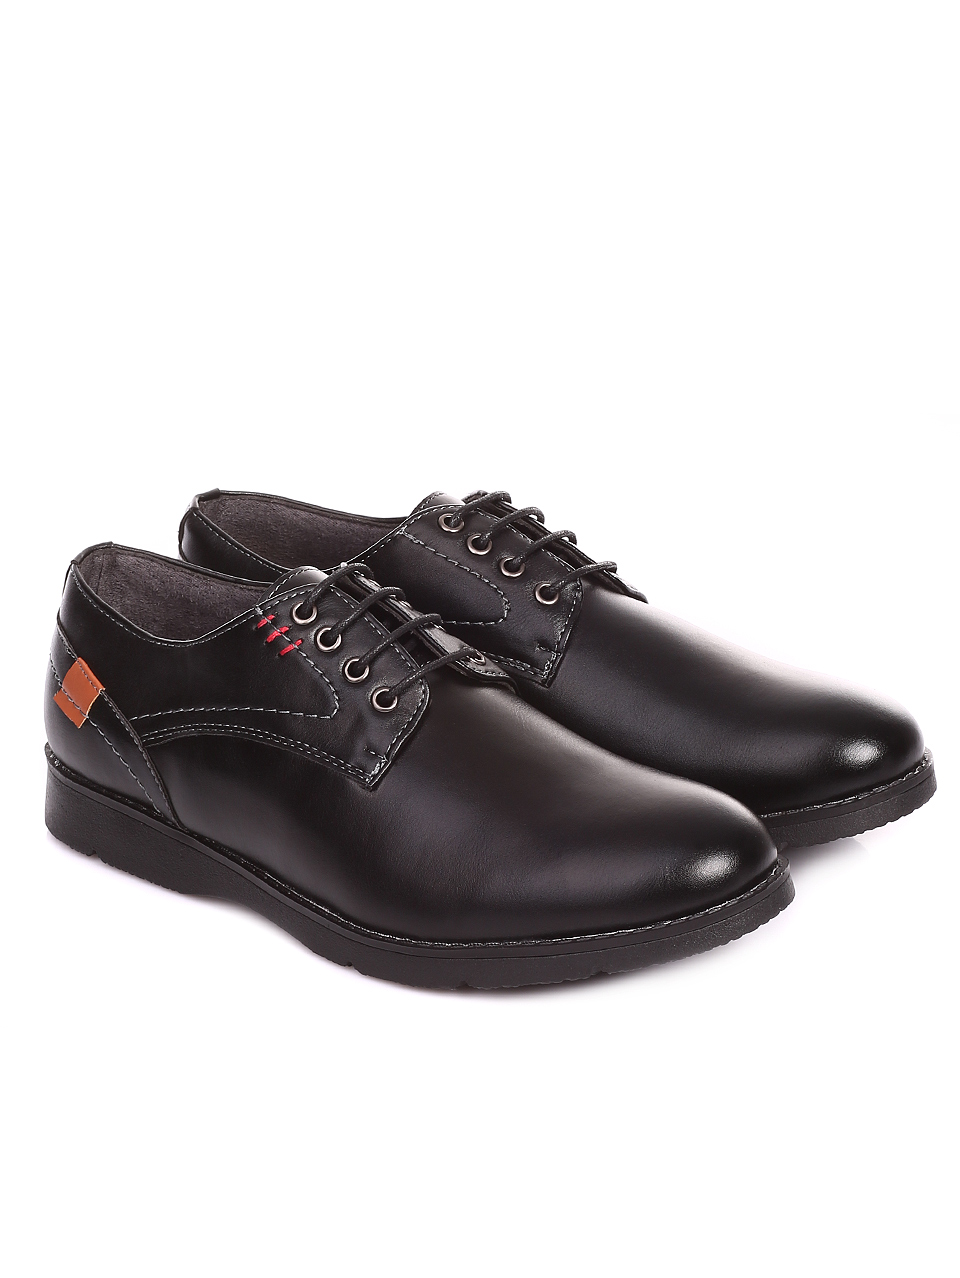 Ежедневни мъжки обувки от естествена кожа 7X-20245 black